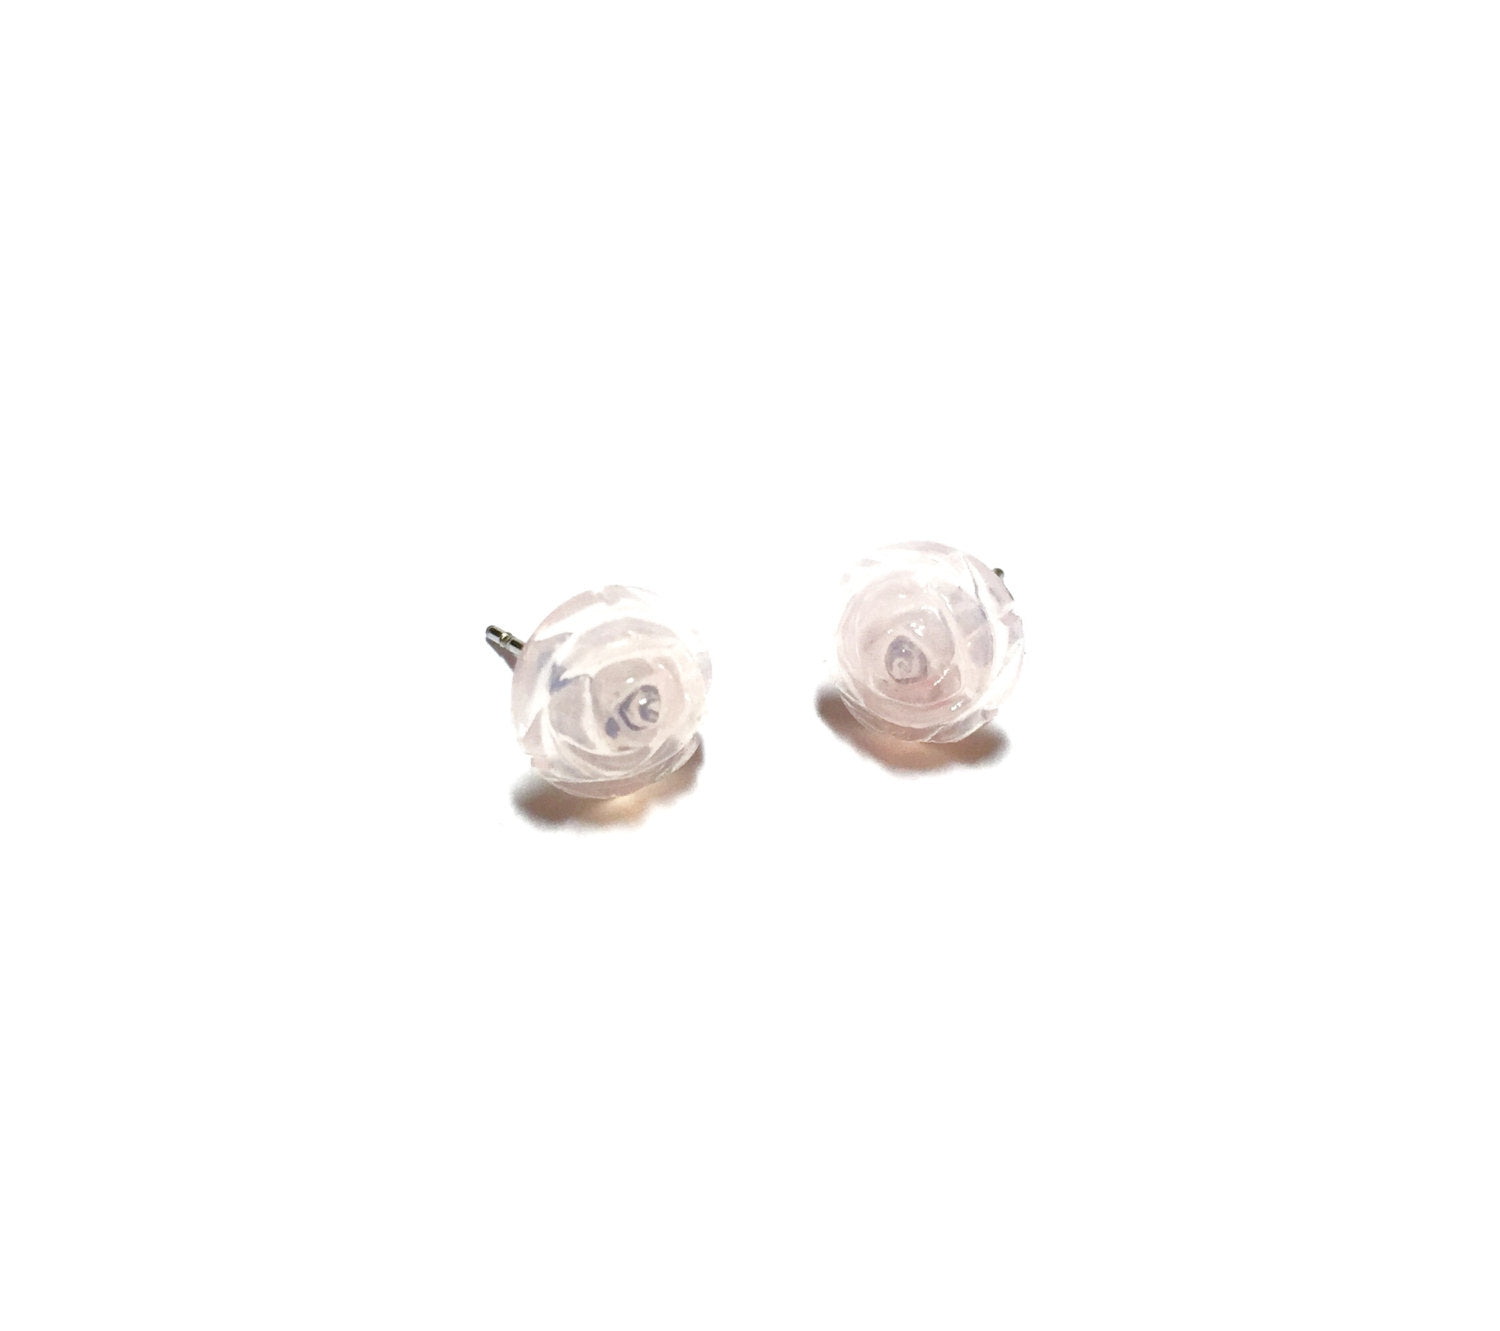 80s rose earrings